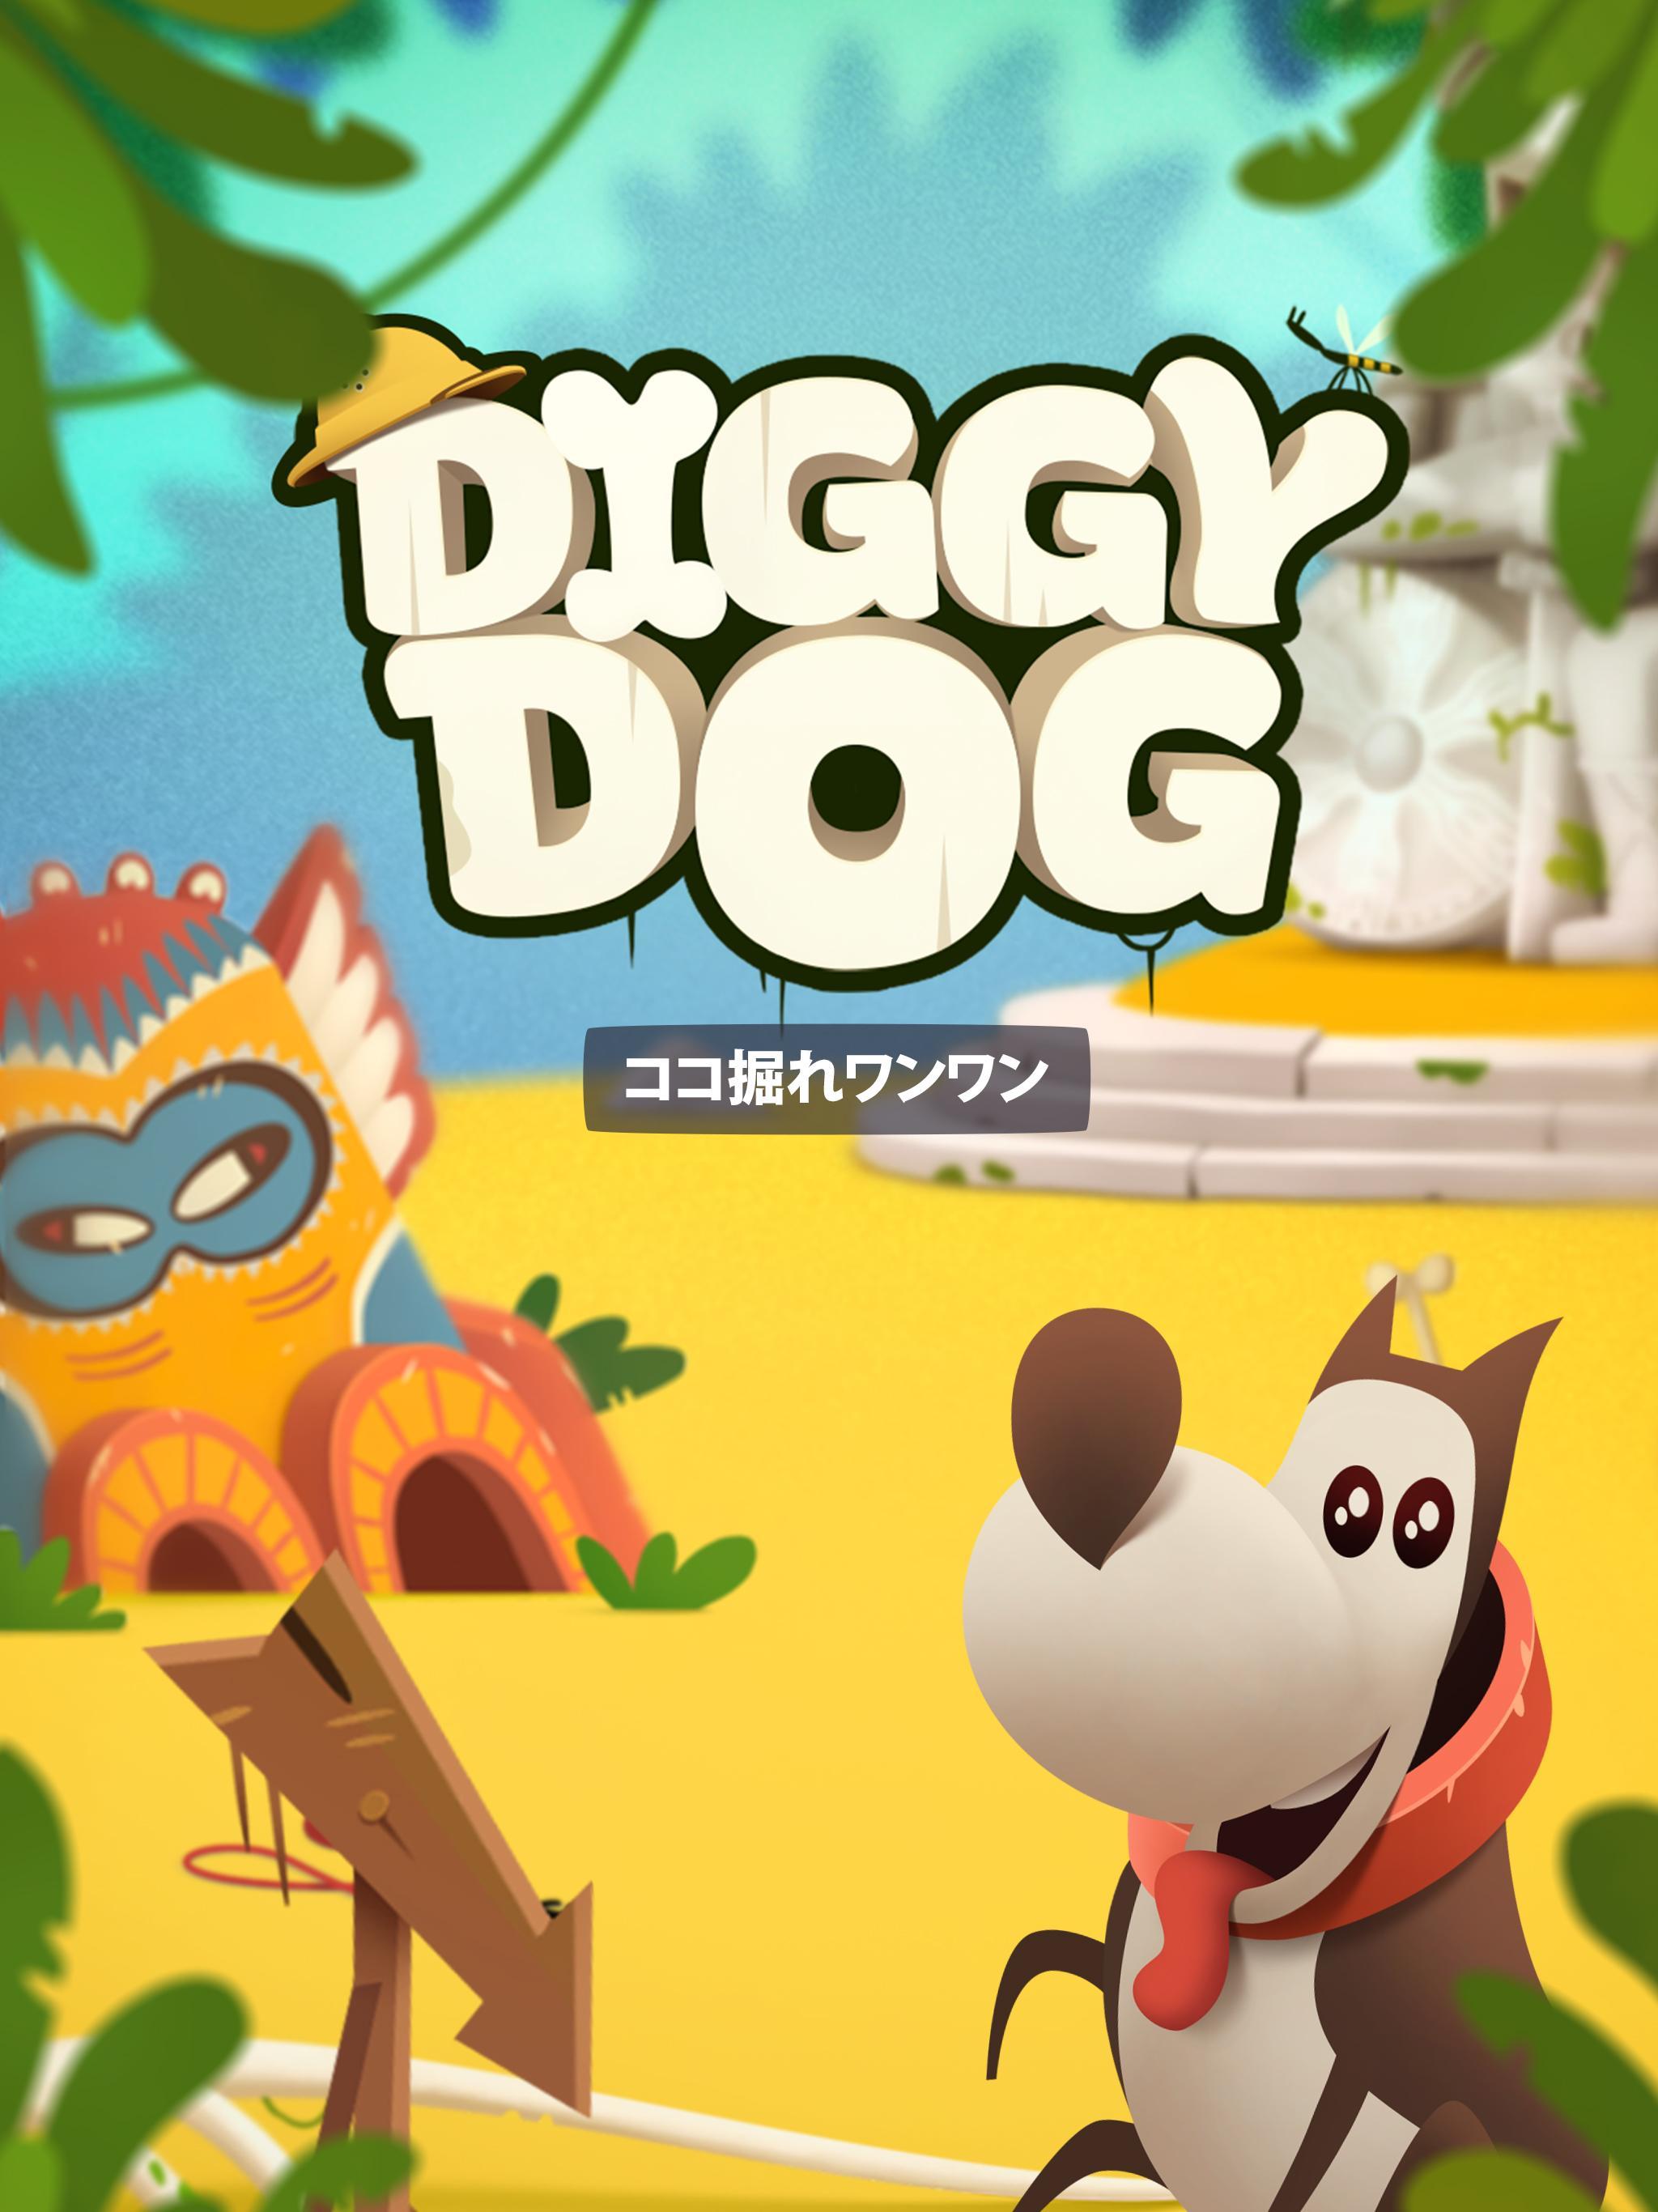 ココ掘れワンワン (My Diggy Dog )のキャプチャ